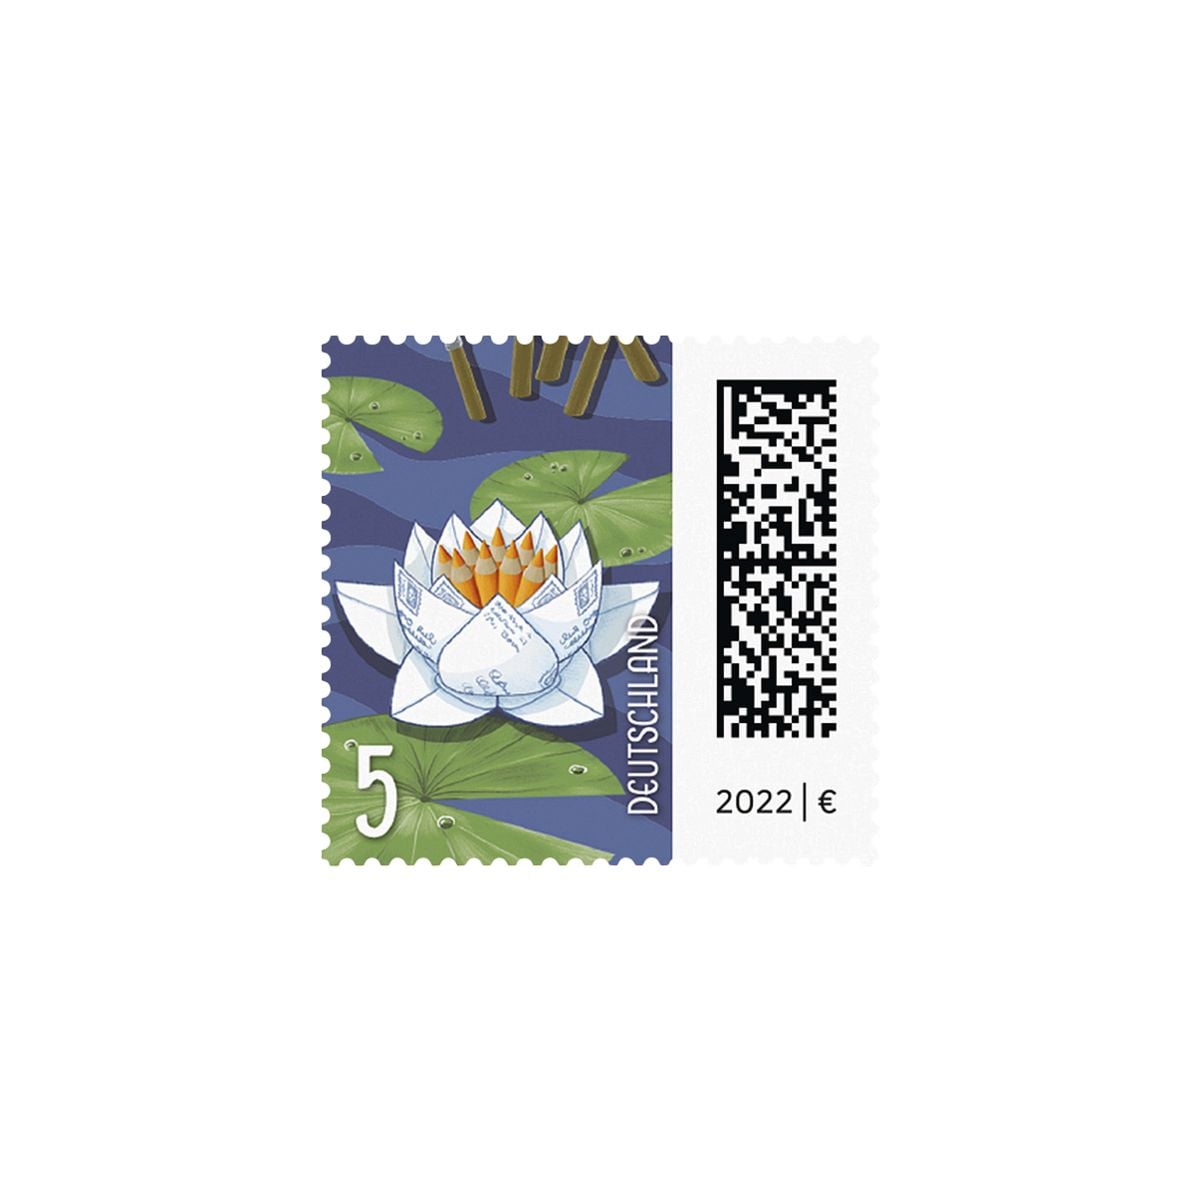 0,05 € Briefmarkenrolle Seebriefrose Deutsche Post, 200x Ergänzungsbriefmarke nassklebend